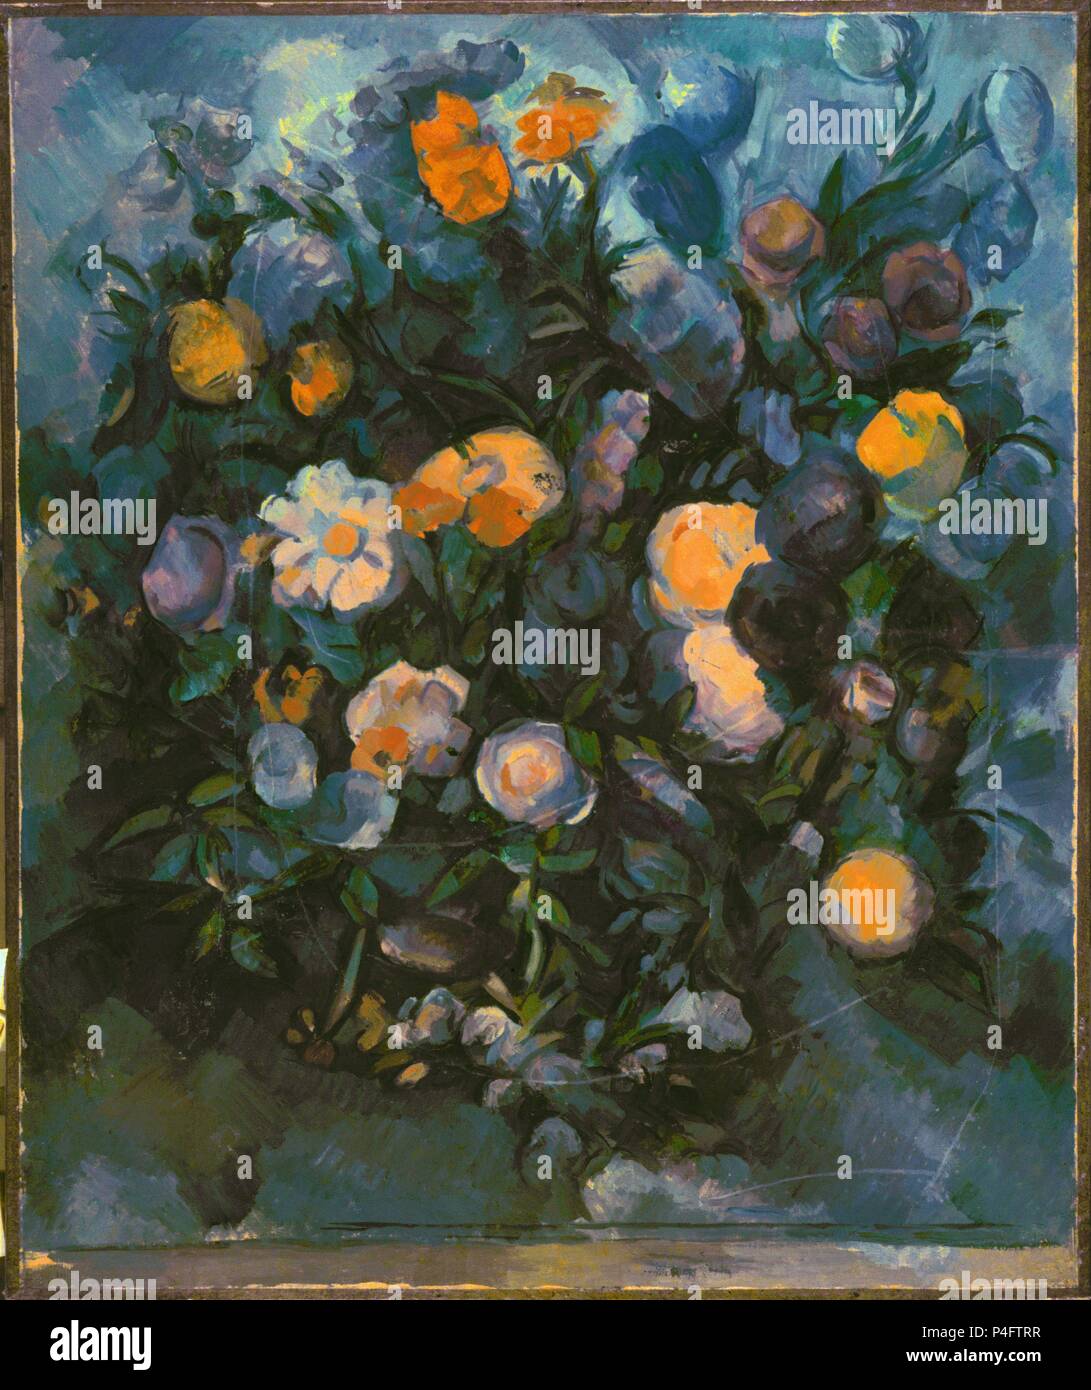 Vase mit Blumen - 1902/04 - 77 x 64 cm - Öl auf Leinwand - Französisch Postimpressionismus. Autor: Paul Cézanne (1839-1906). Lage: MUSEO Puschkin-museum, Moskau, Russland. Auch als: FLORES bekannt. Stockfoto